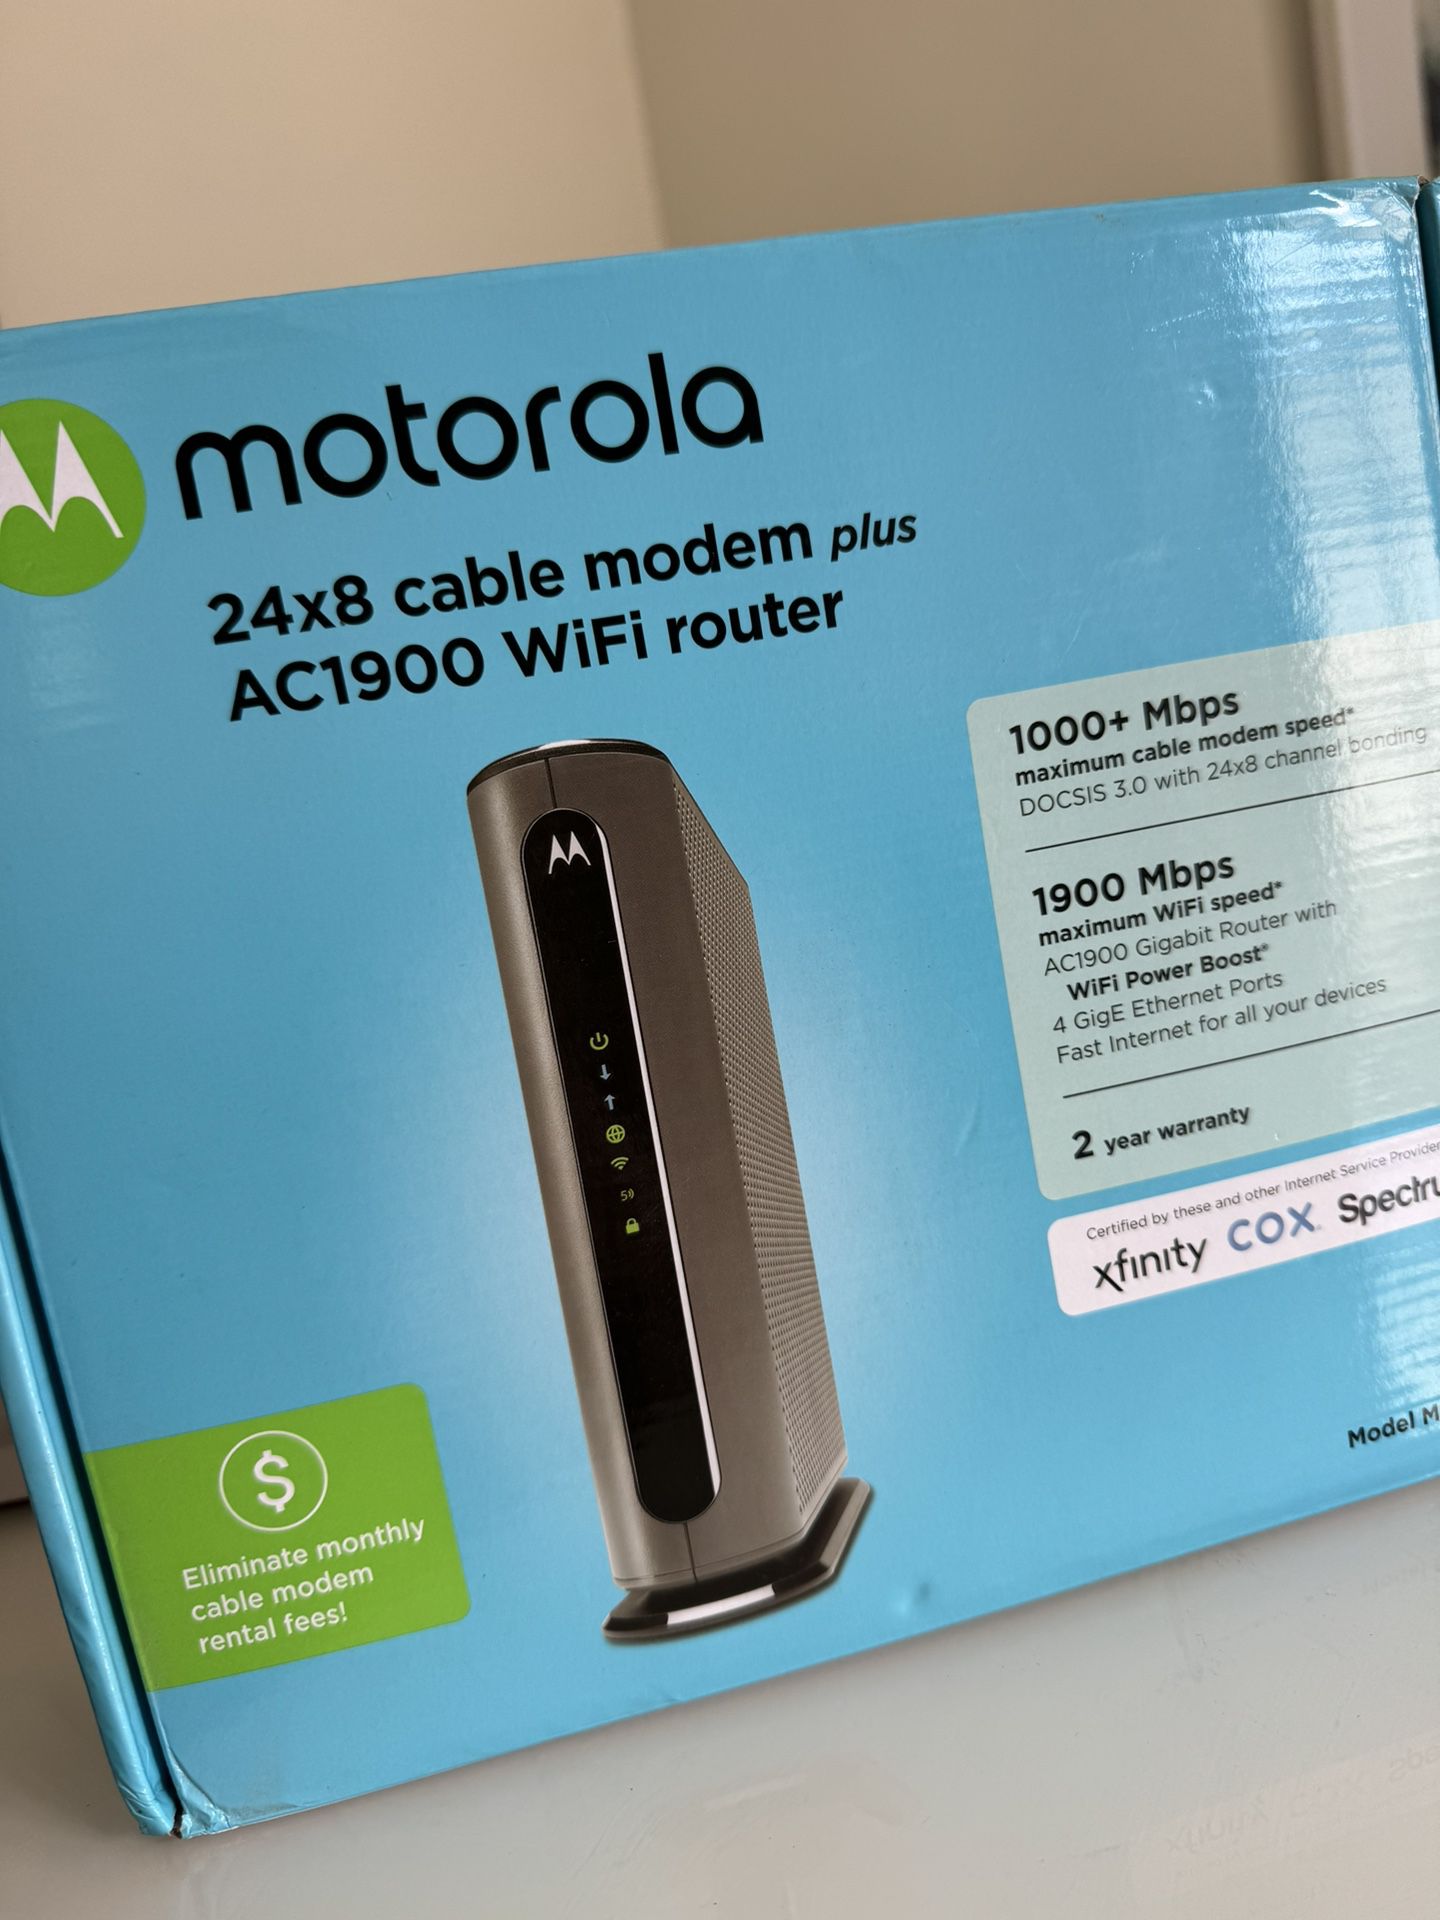 Motorola 24x8 Cable Modem Plus